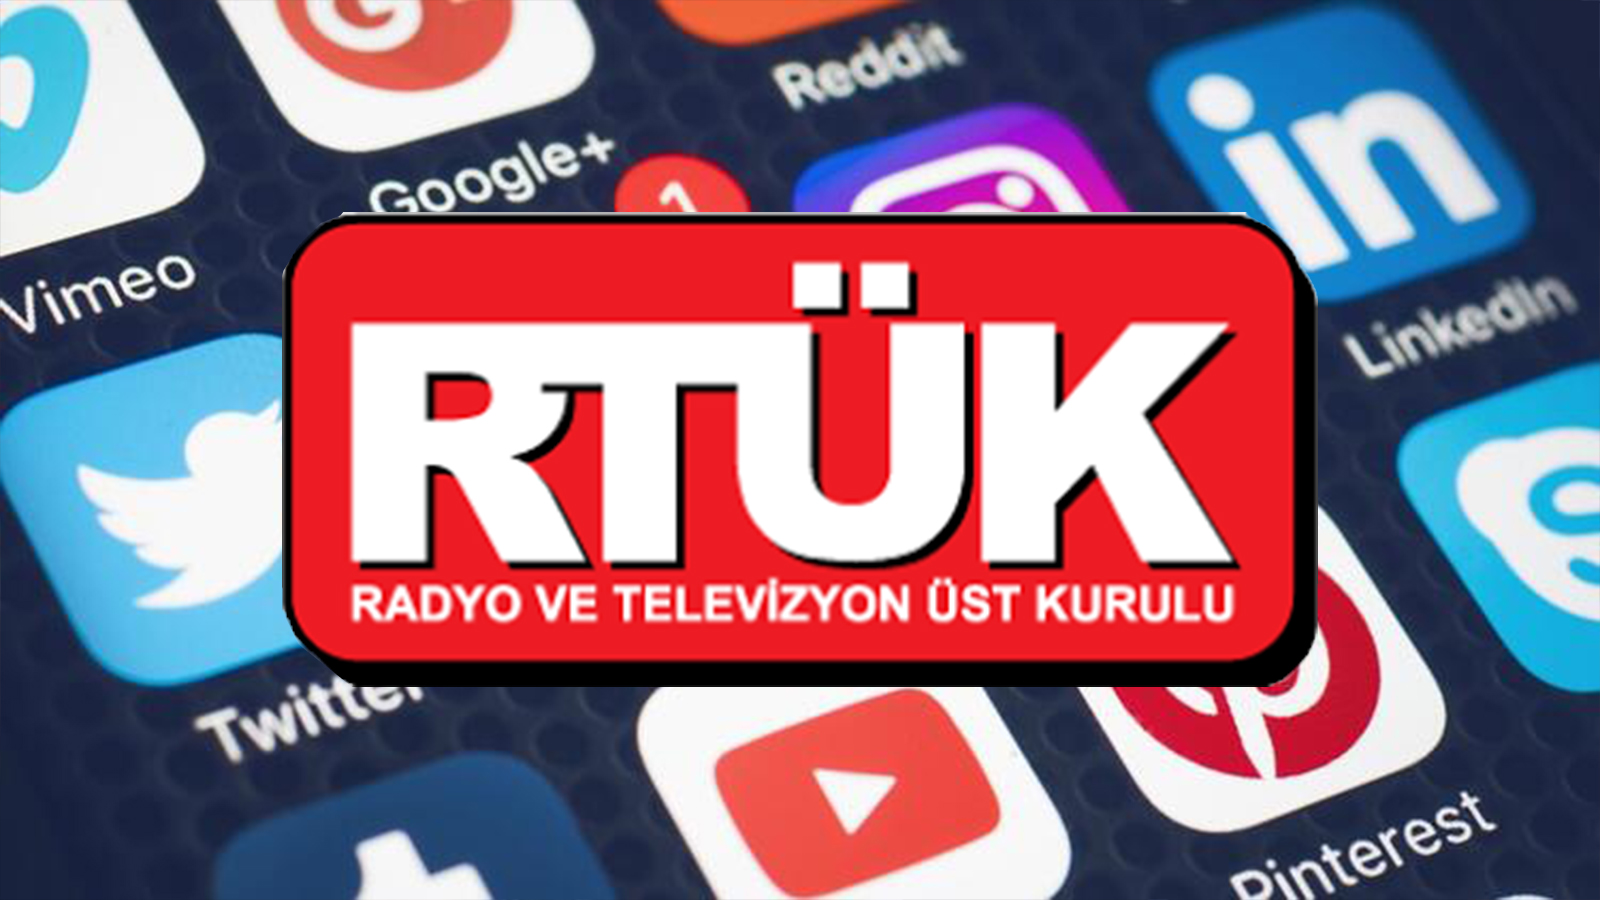 HALK TV ve TELE 1'e 5 gün kapatma cezası!